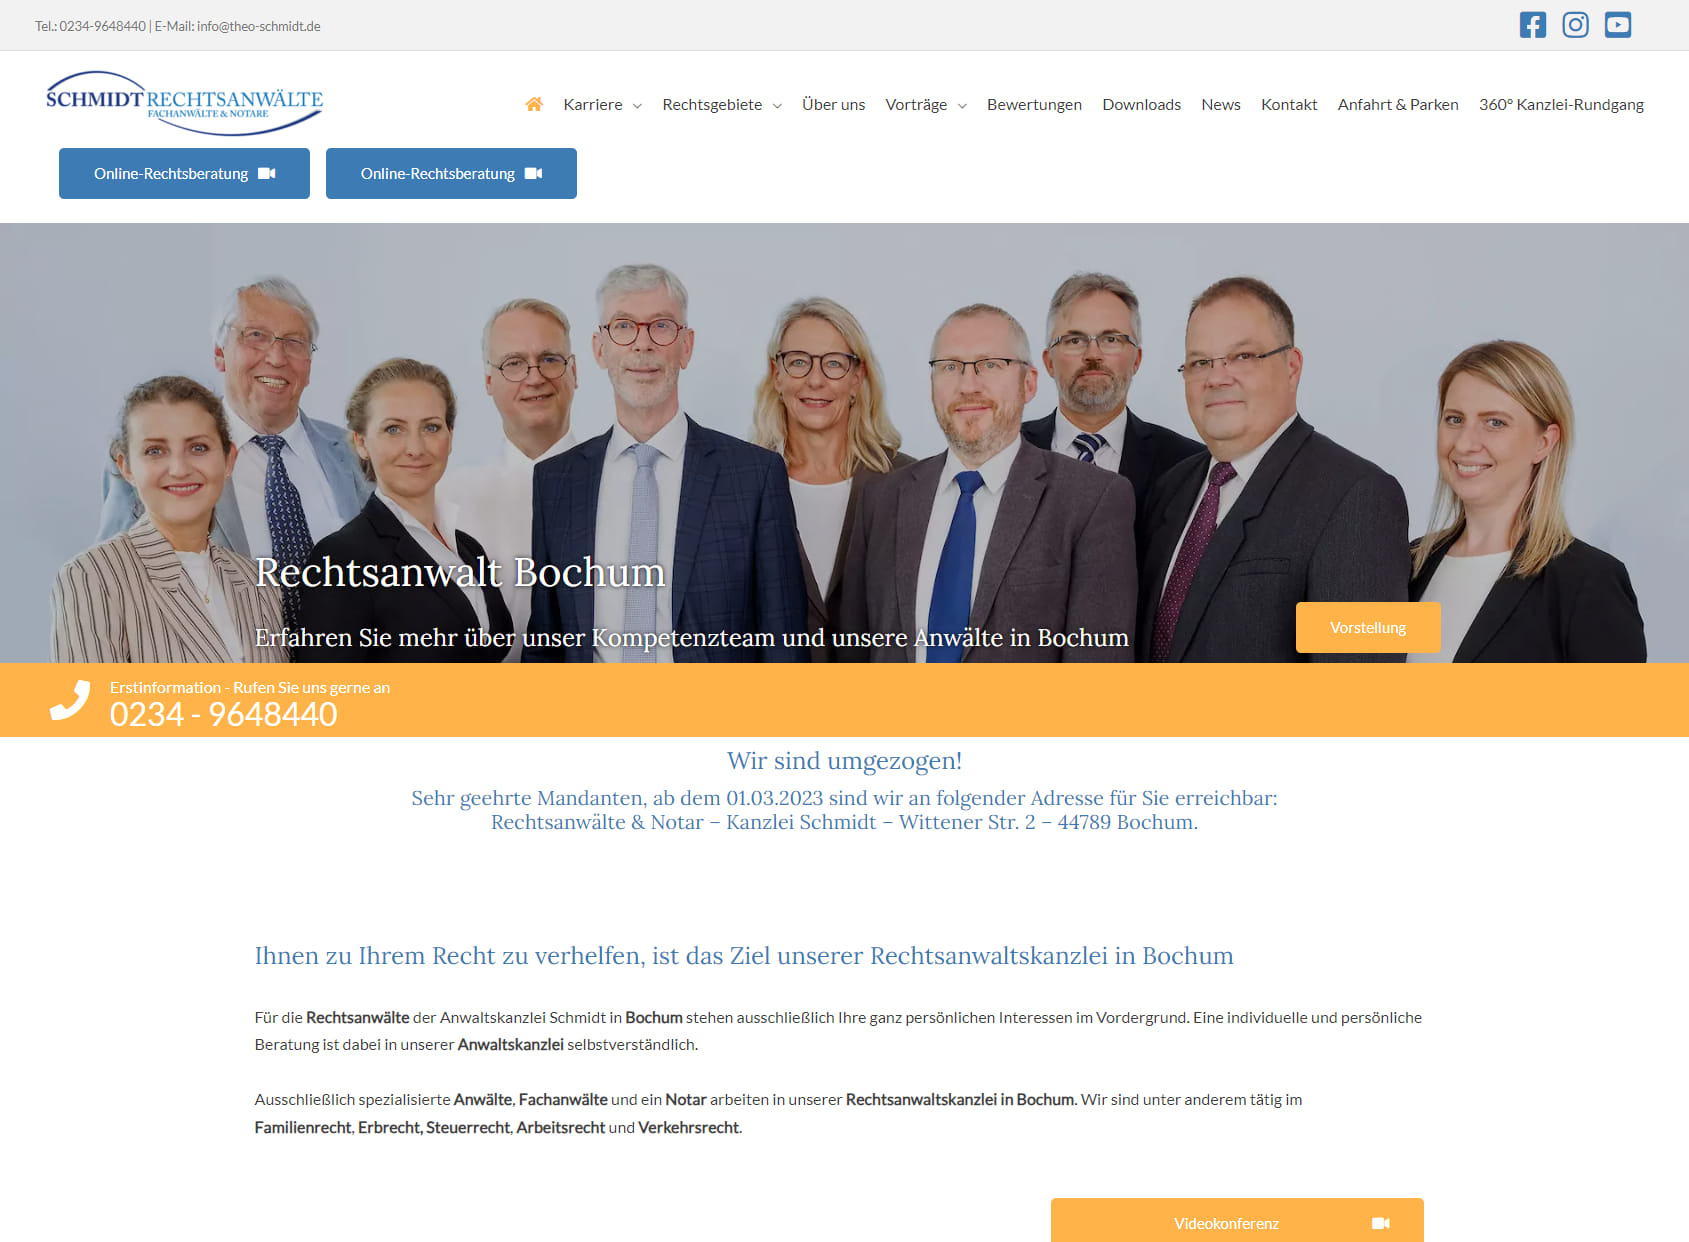 Rechtsanwalt Bochum | Kanzlei Schmidt | Anwalt Bochum | Rechtsanwaltskanzlei Bochum